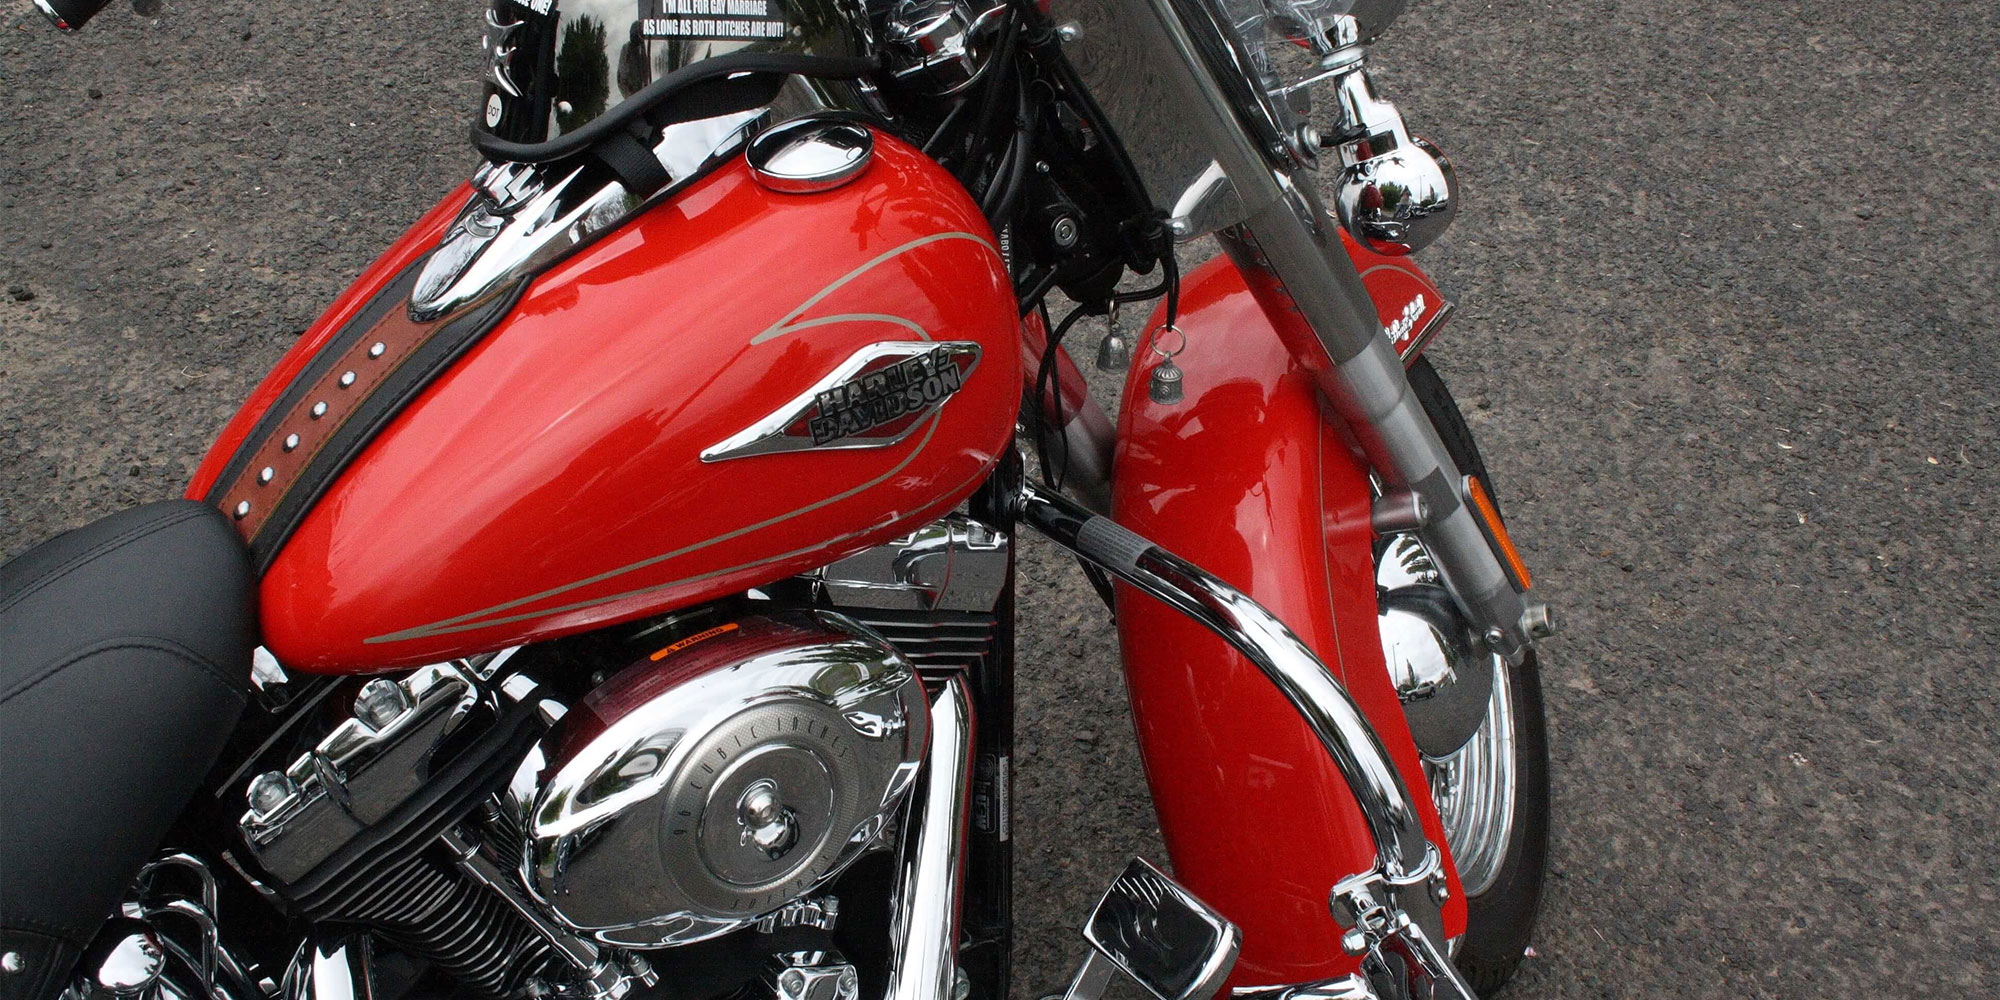 En ren og skinnende motorcykel, der viser sin strålende røde tank og fender